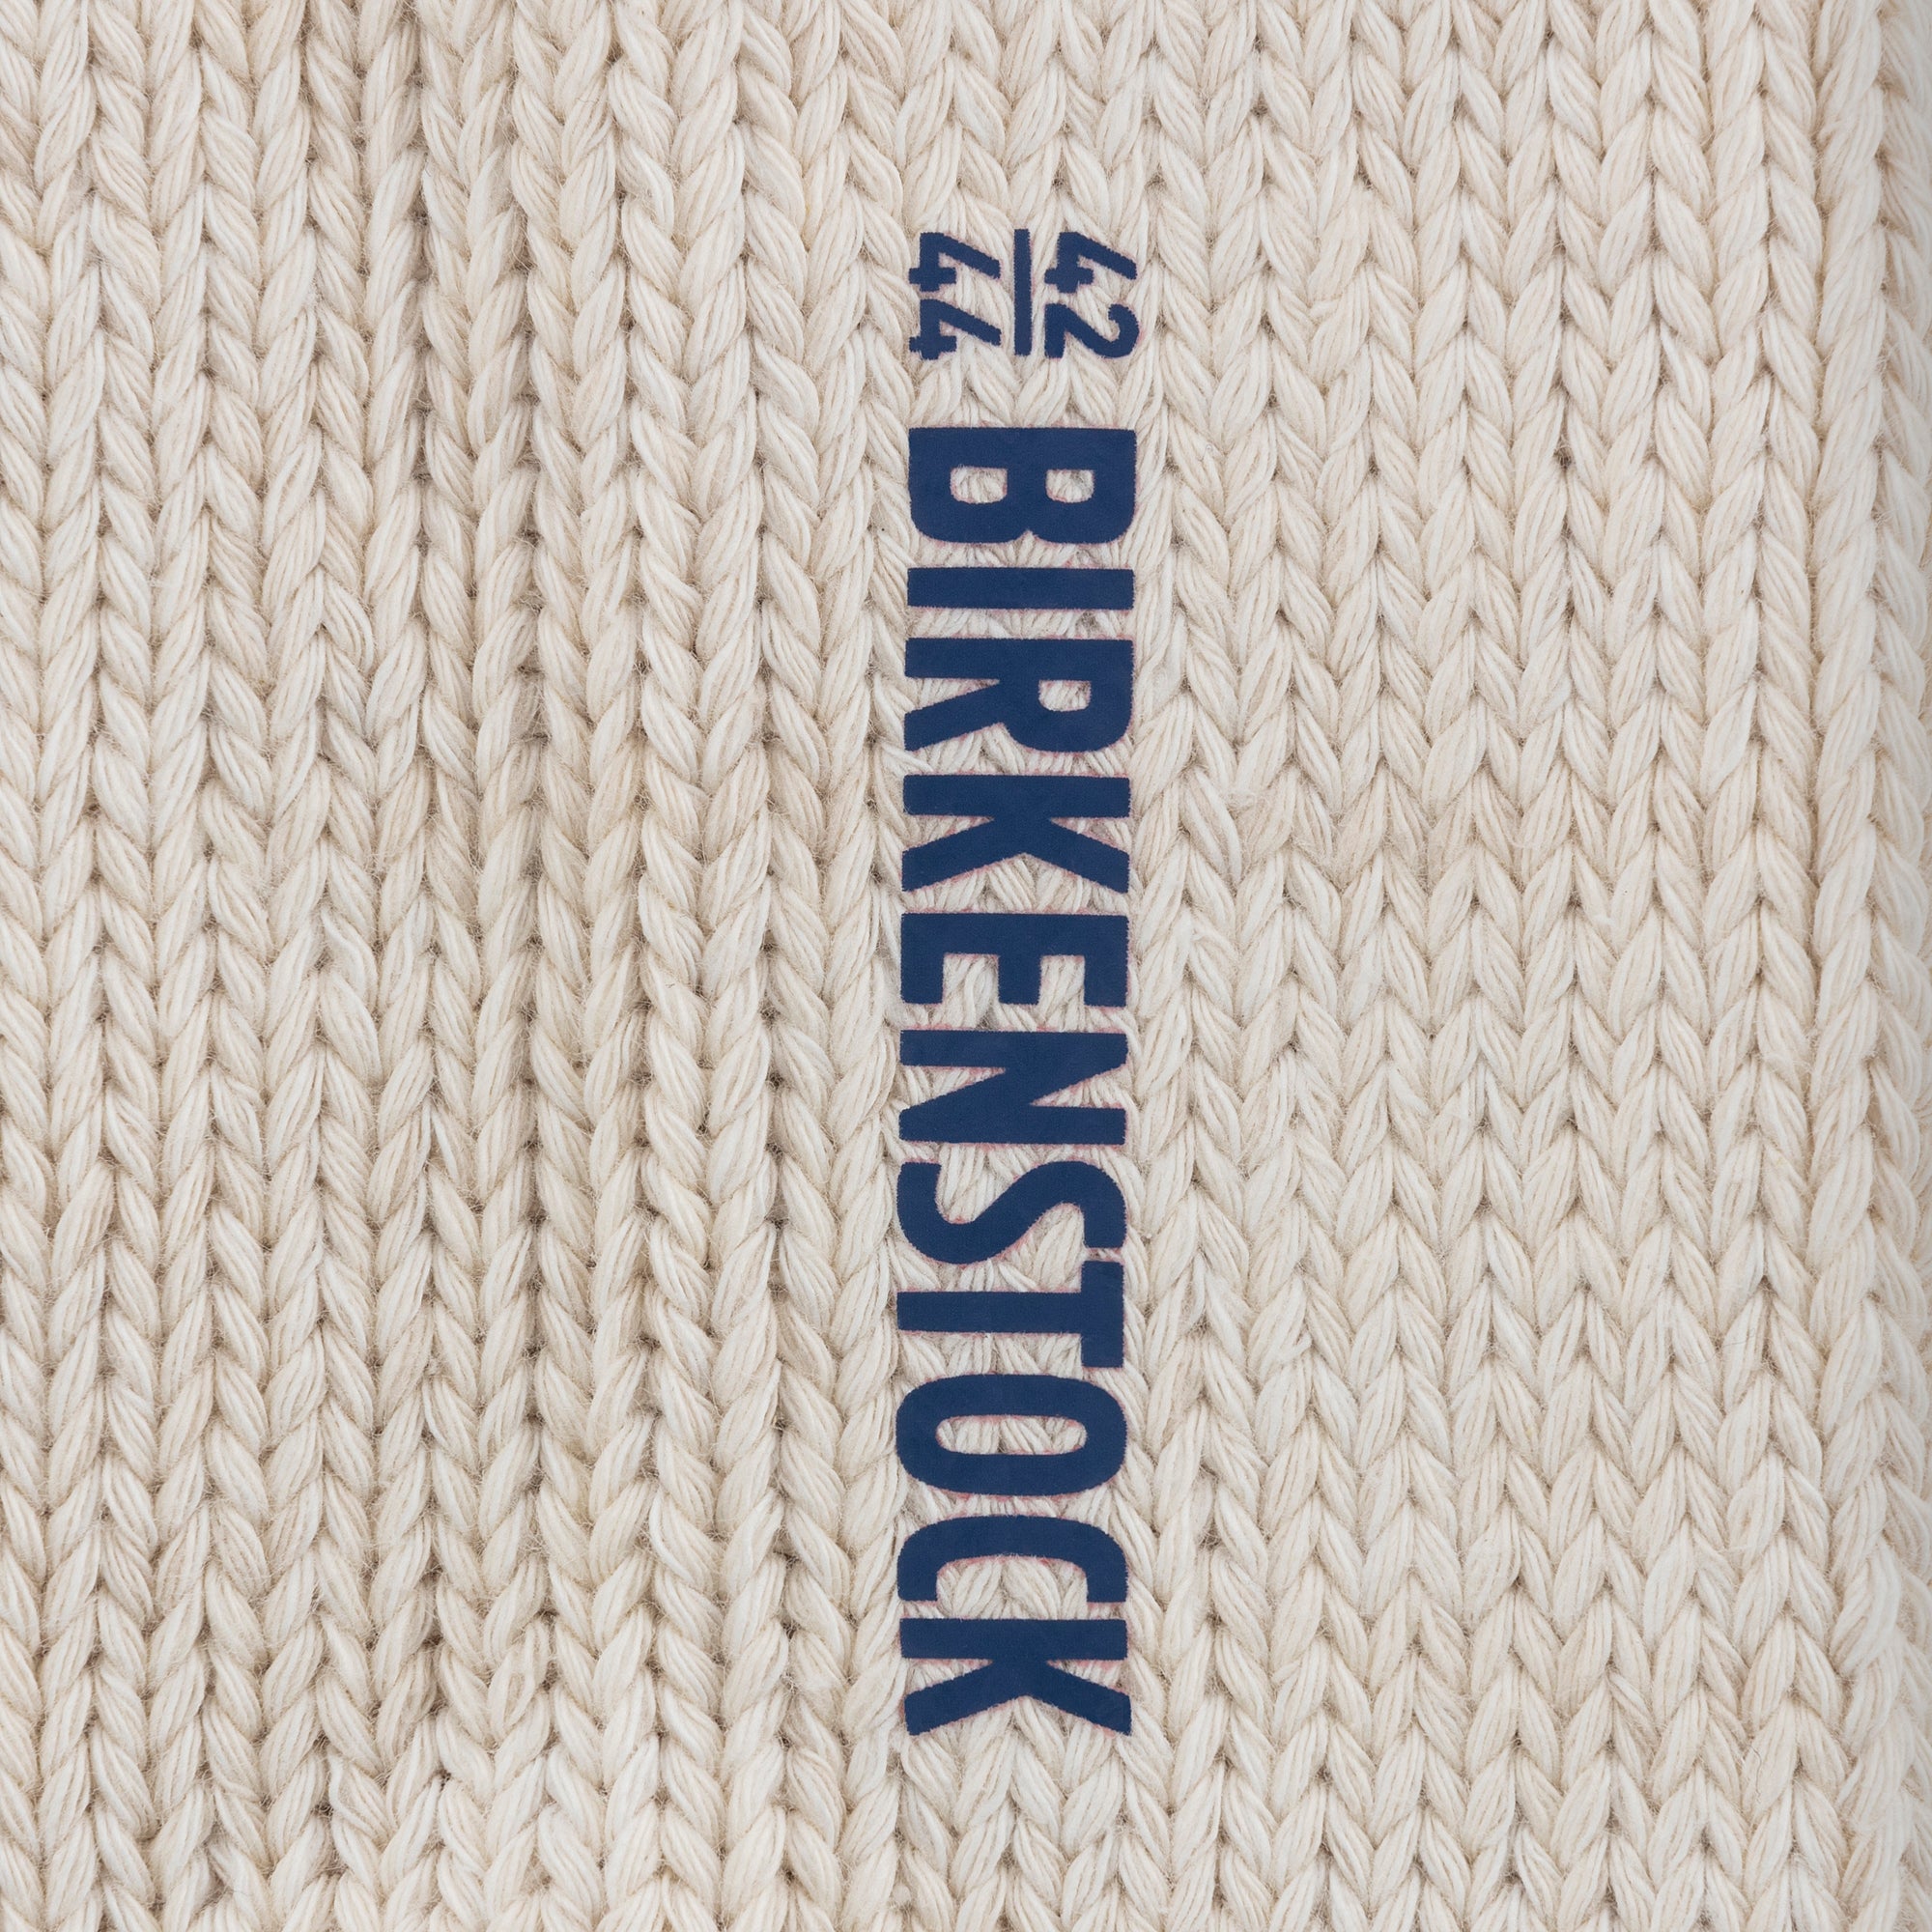 Birkenstock Cotton Twist Offwhite Calze Unisex - 4